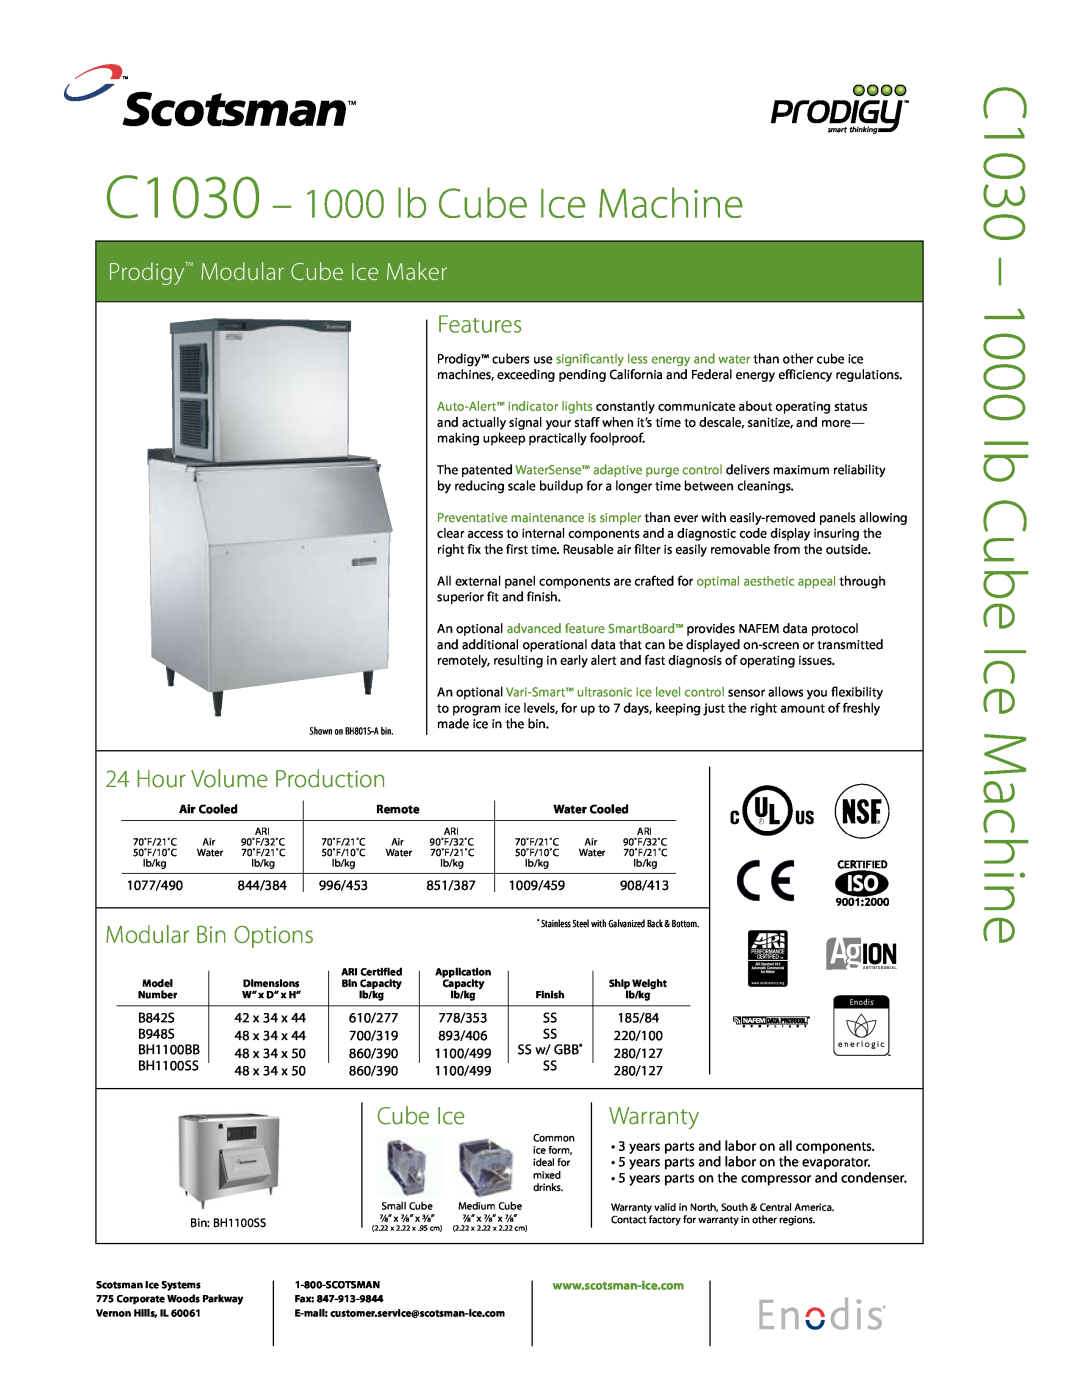 Scotsman Ice user manual Models C0522, C0530, C0630, C0830 and C1030 